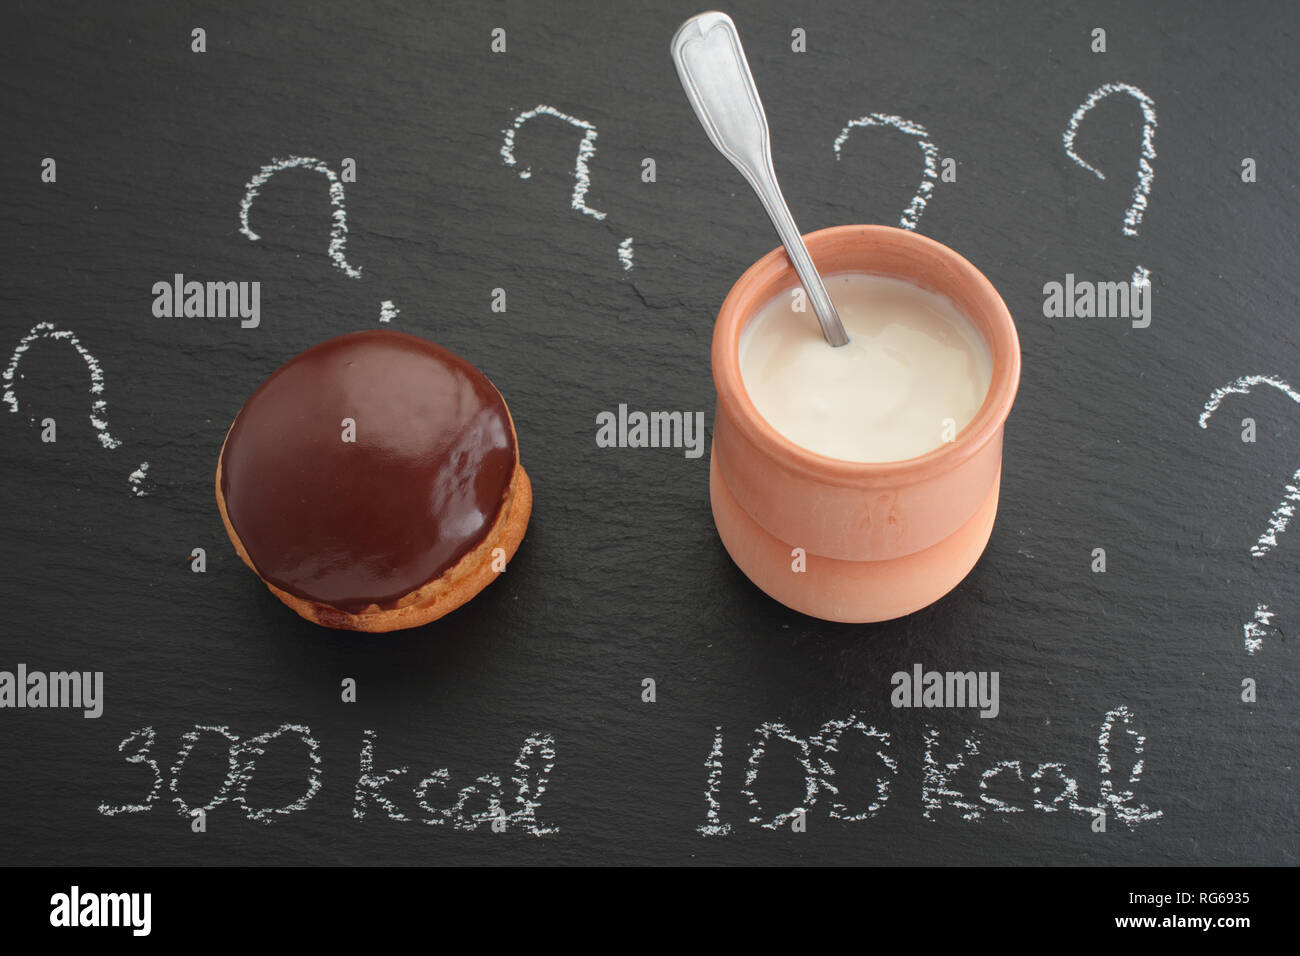 Il conteggio delle calorie concetto, la torta al cioccolato e il vasetto di yogurt con etichette di calorie Foto Stock